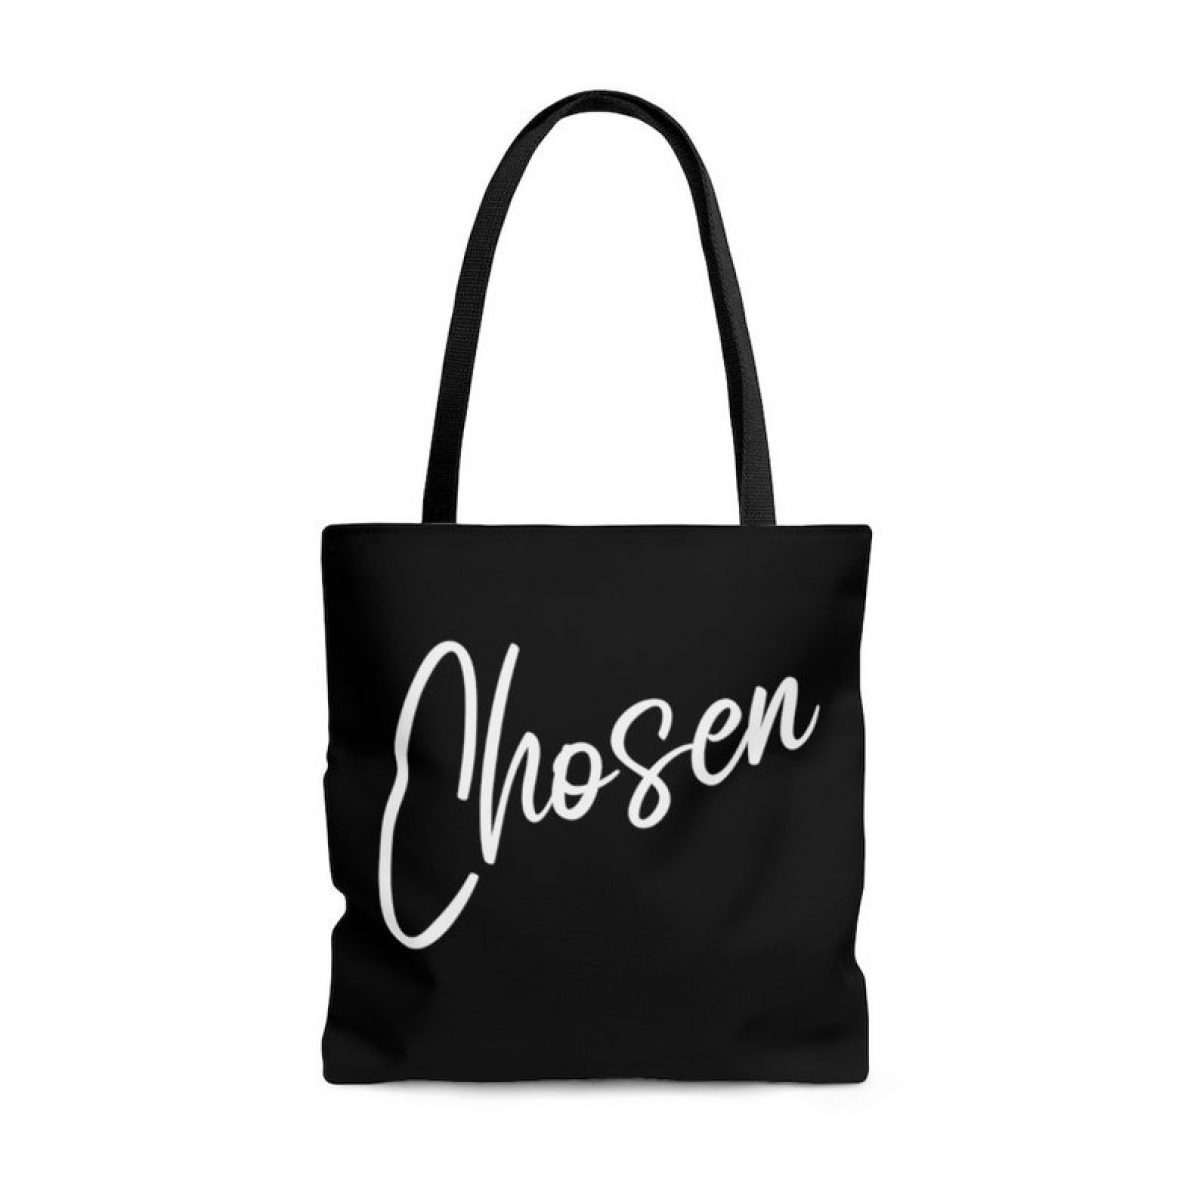 chosen tote bag christian gift for mom faith based gift for her 1 3